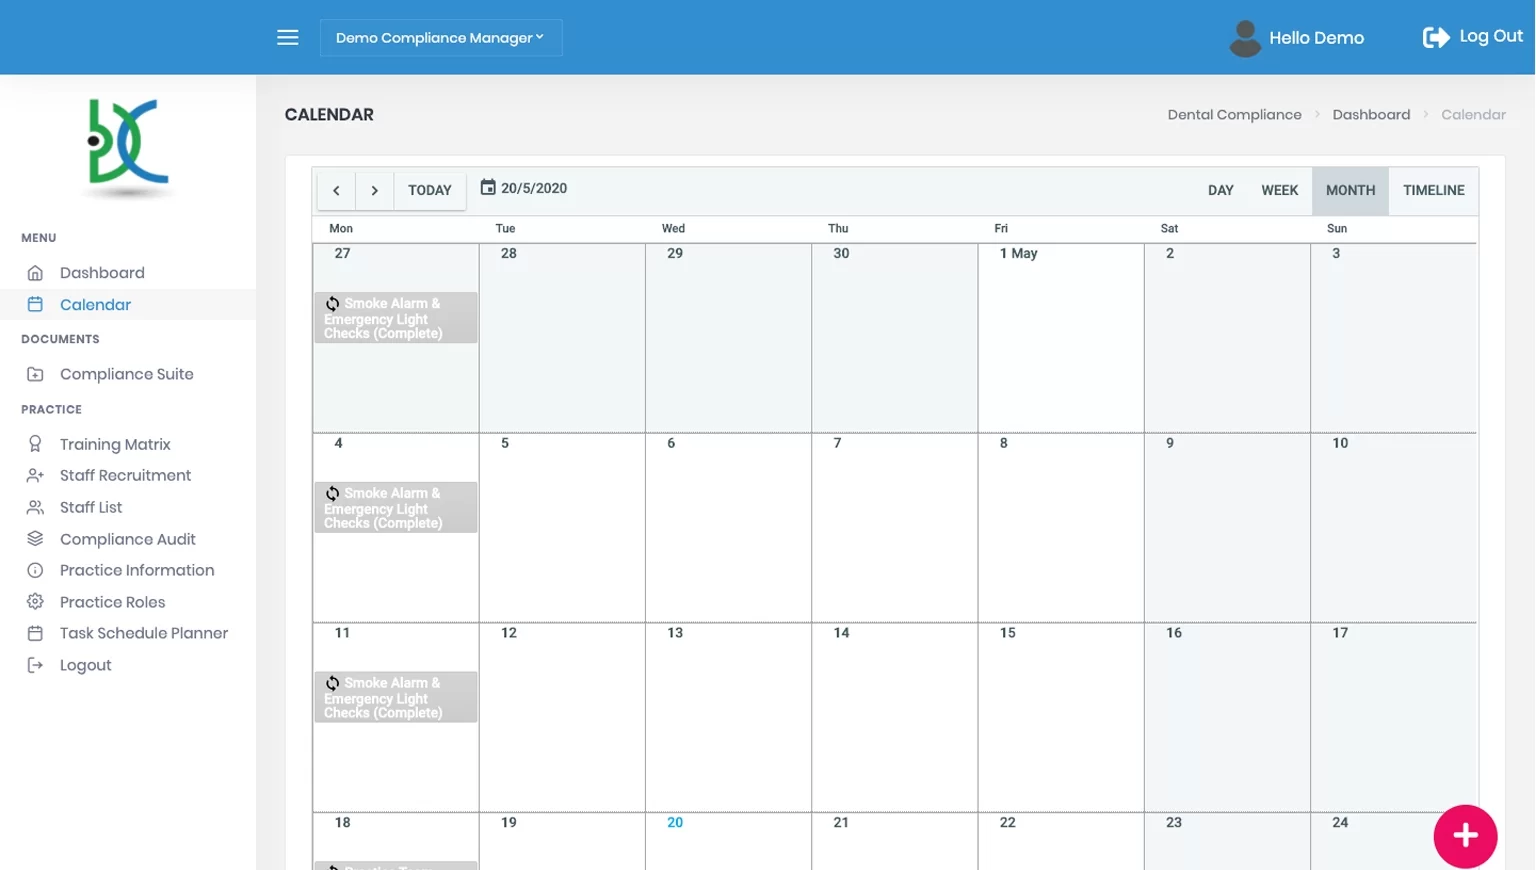 calendar view of compliance software